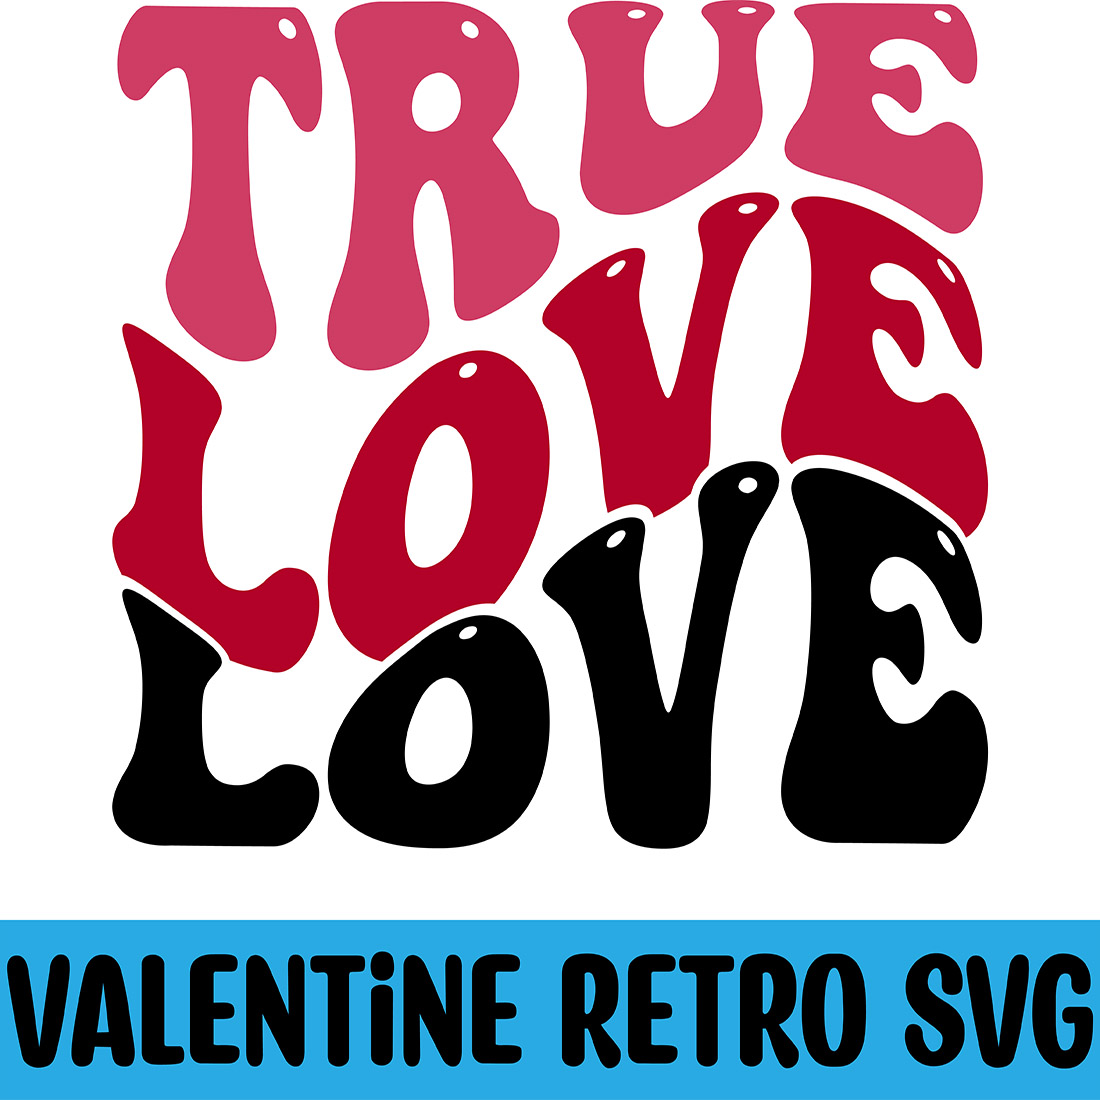 True Love Retro SVG cover image.